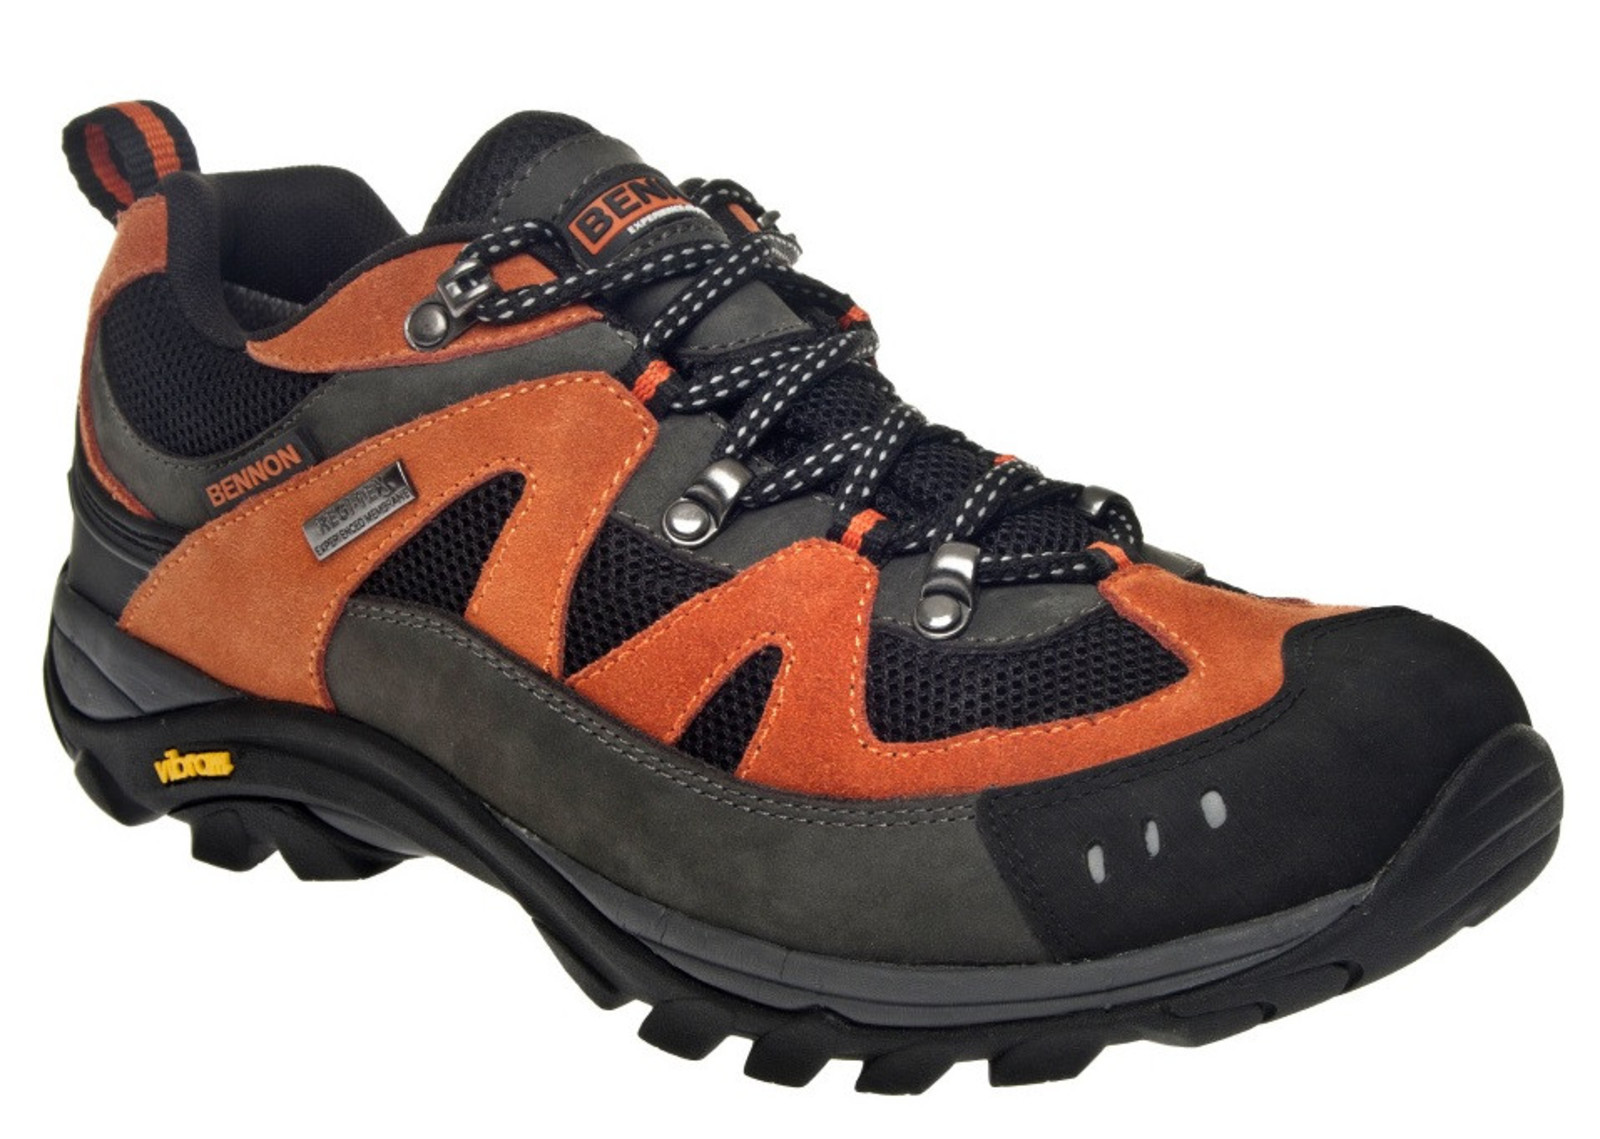 Outdoorové topánky Bennon Emperado s membránou - veľkosť: 37, farba: sivá/oranžová